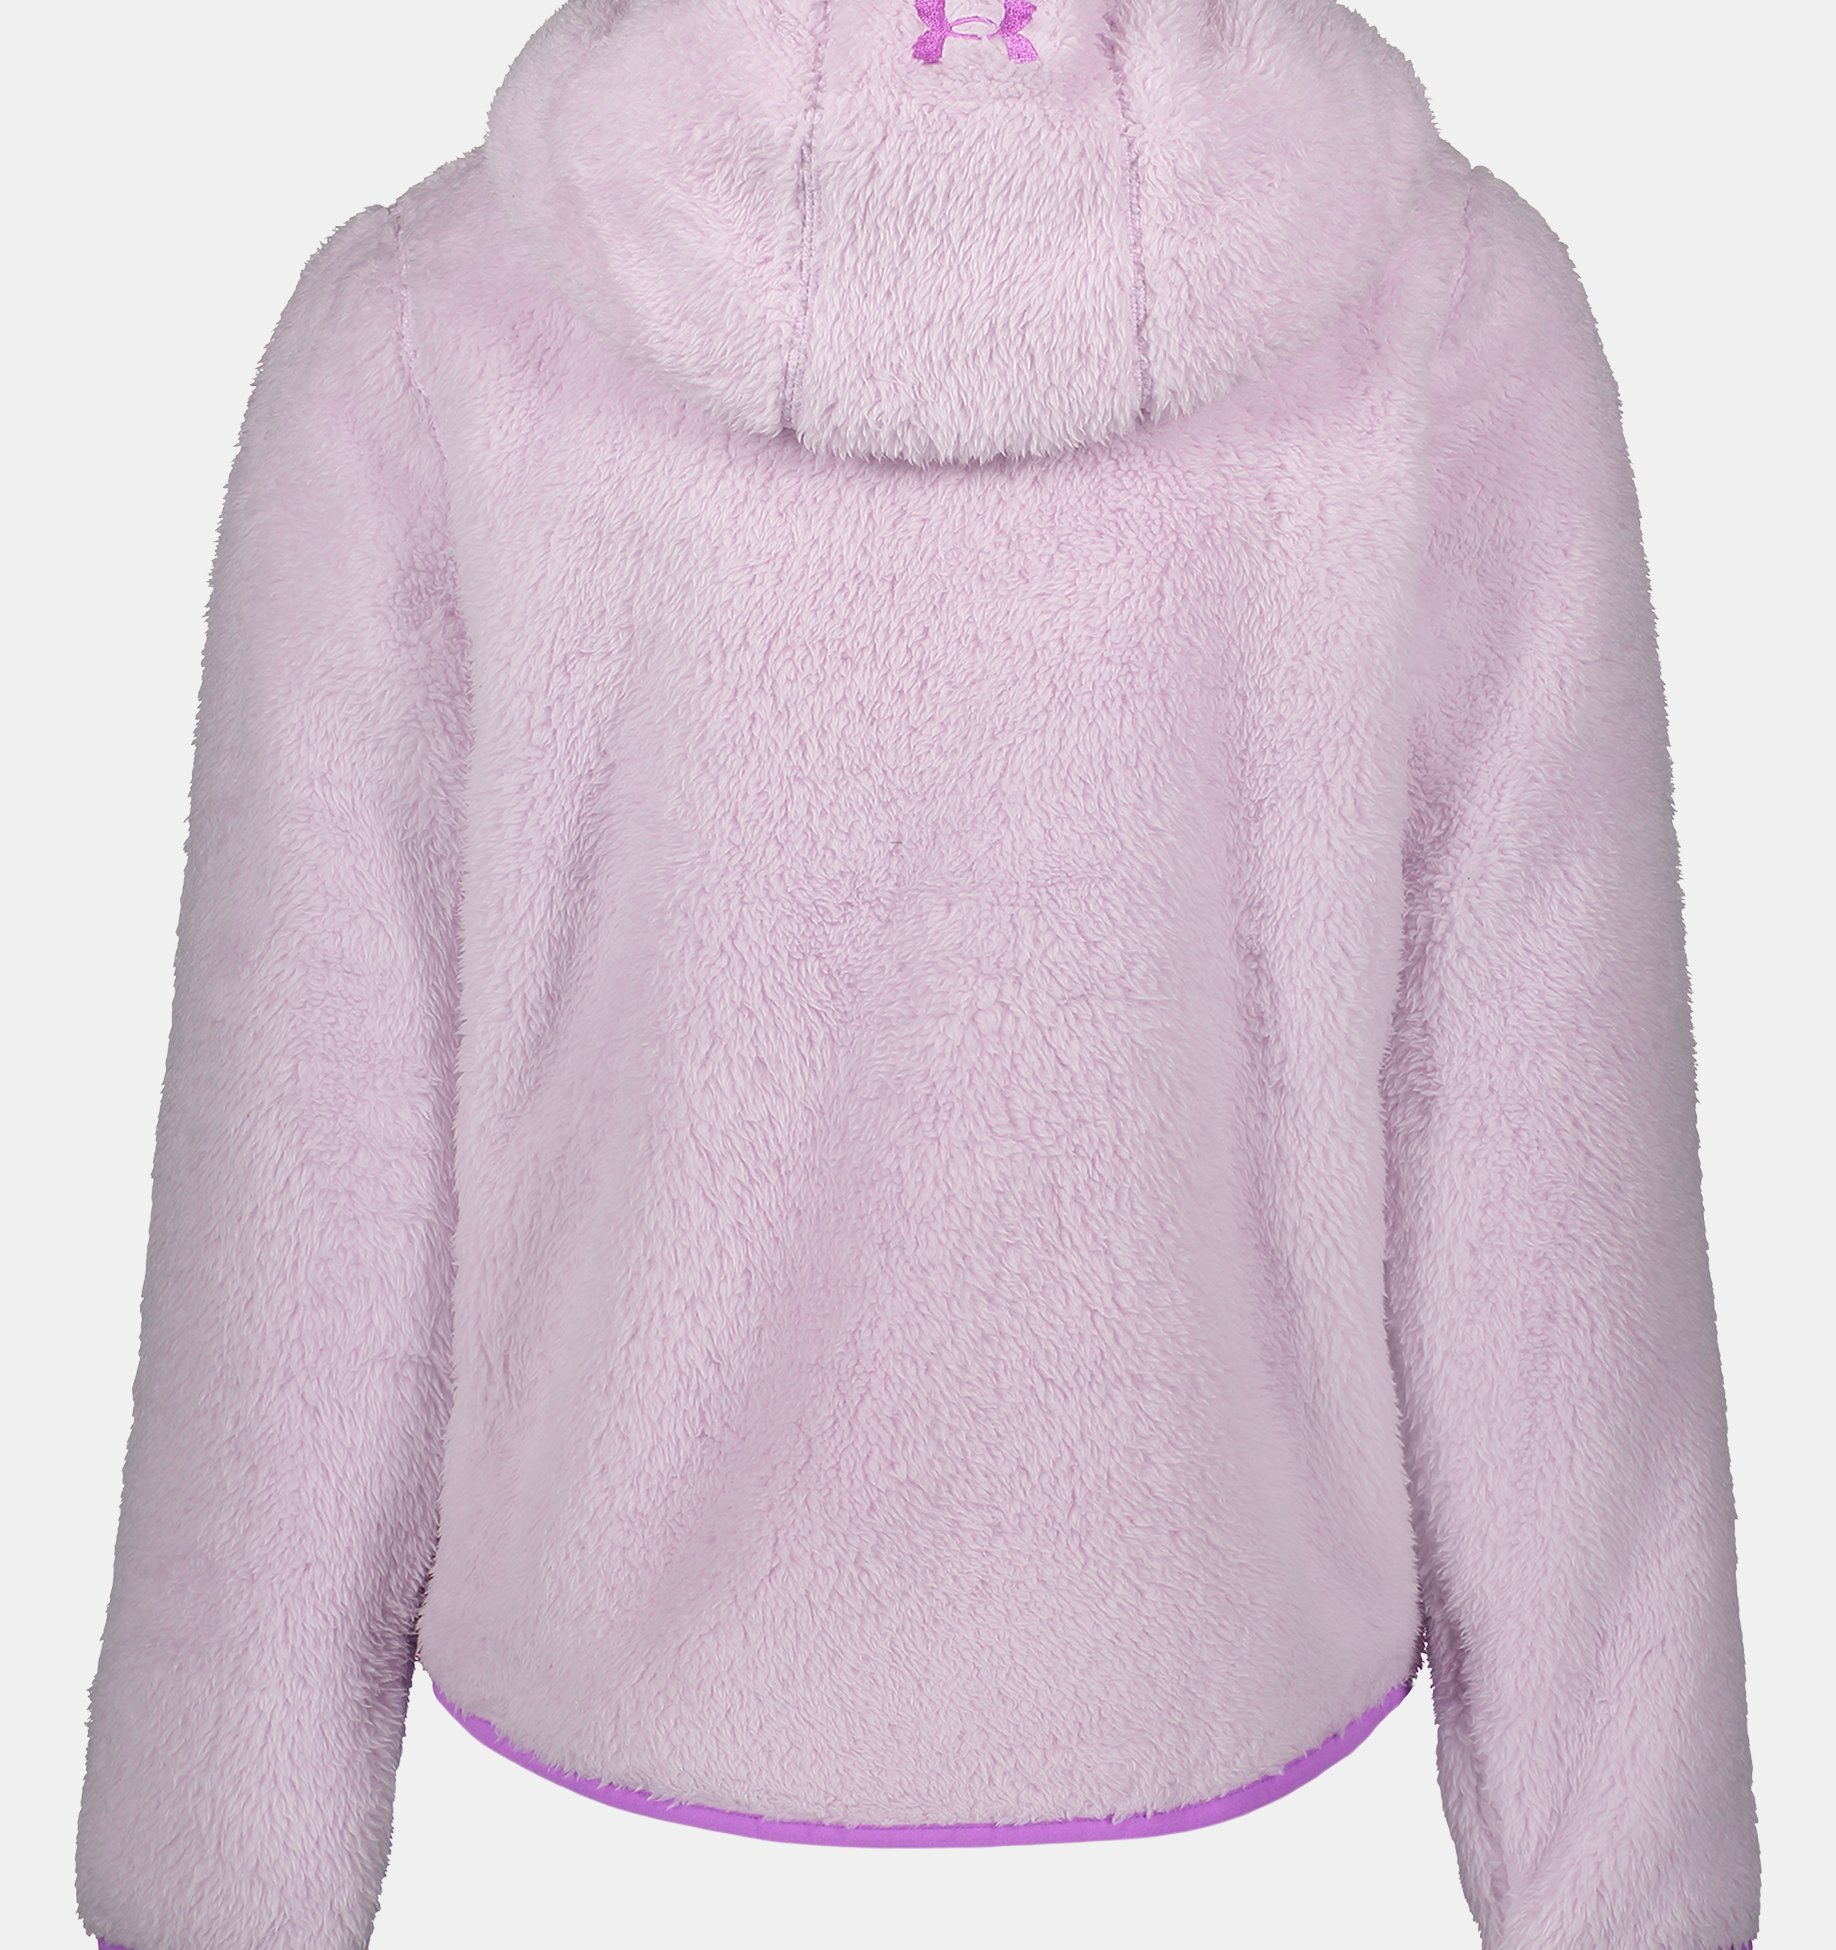 Girls $65 UnderArmour Fleece Lined Hooded Lightweight Jacket!!! New! 